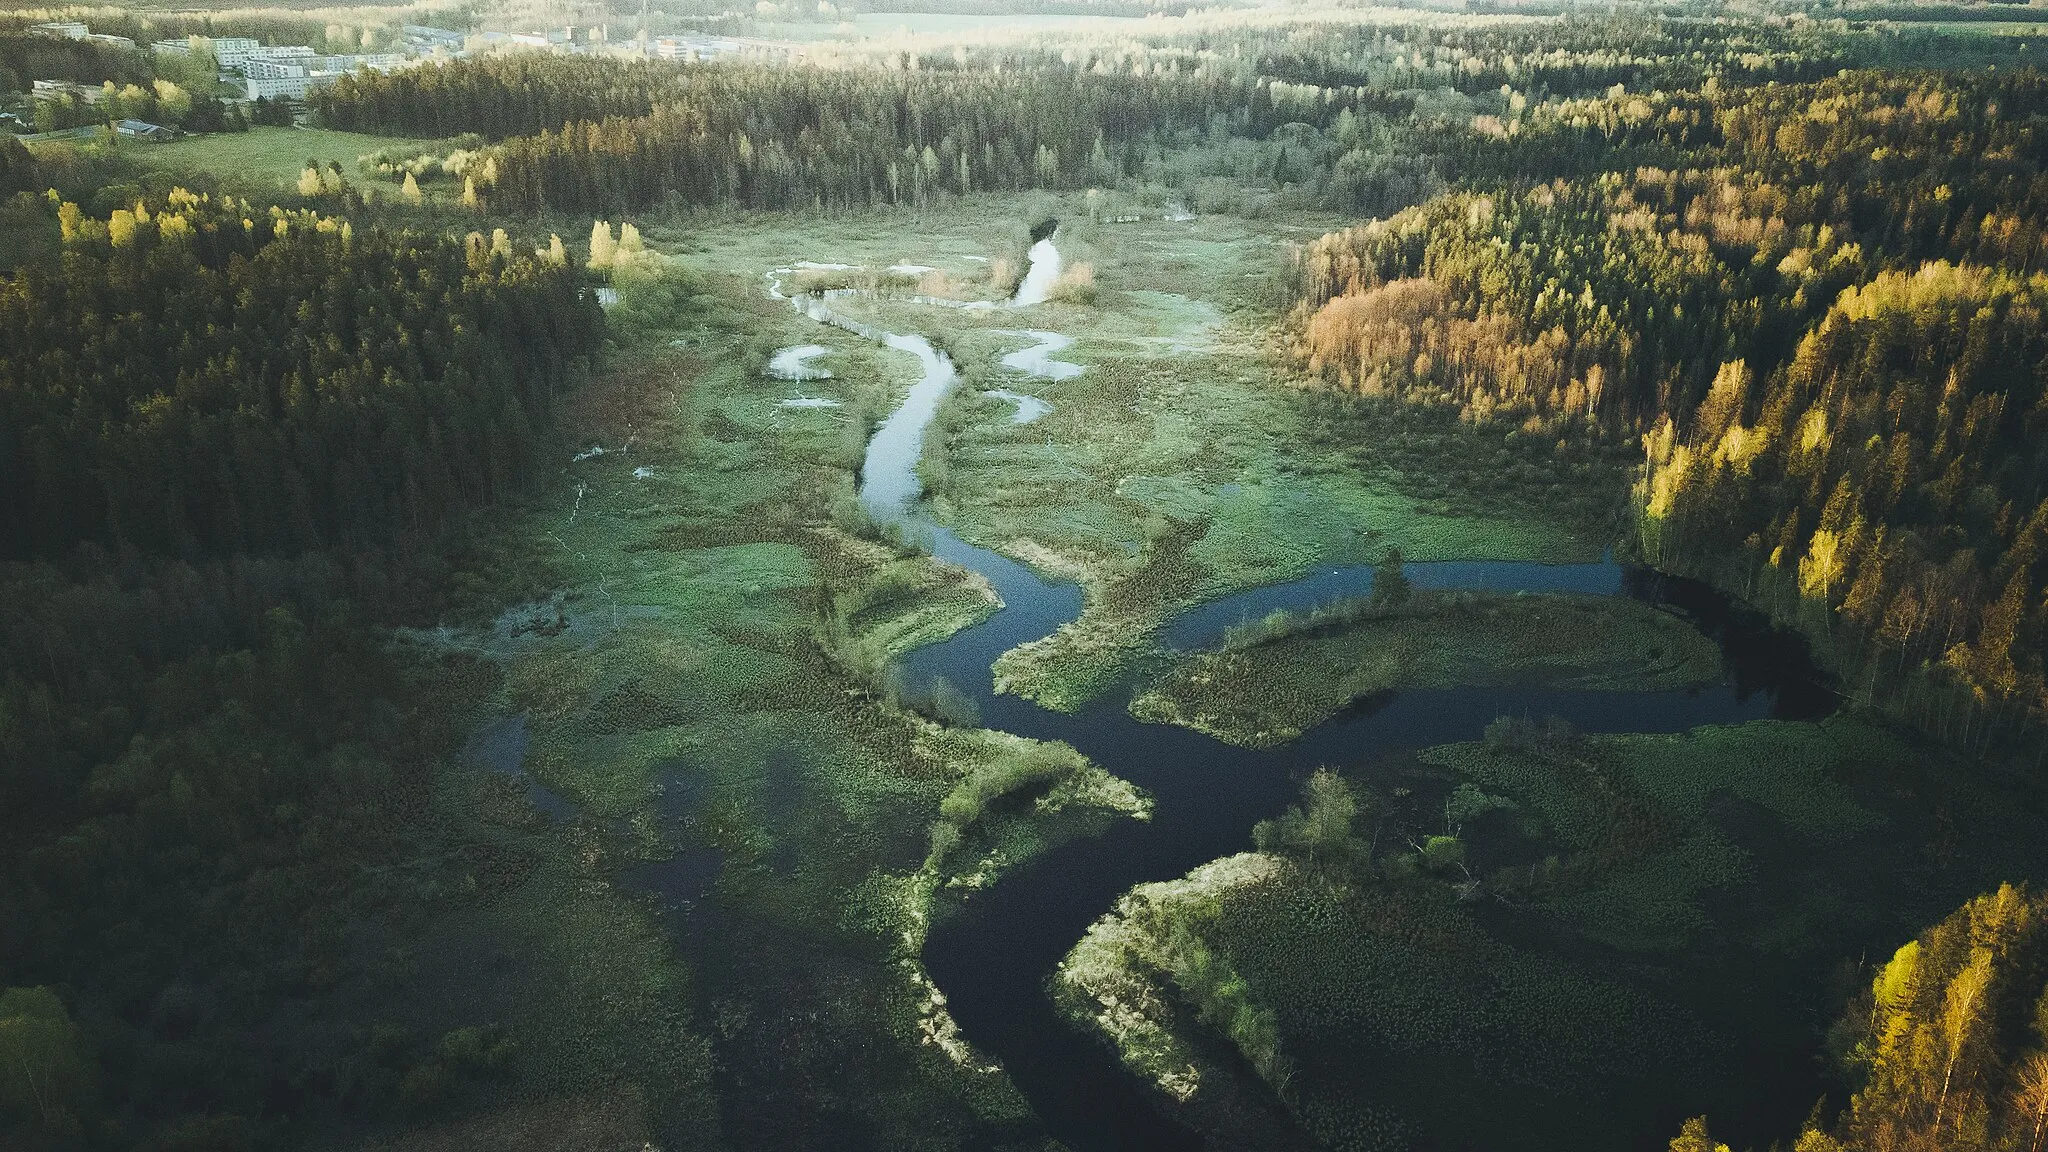 Photo showing: Õhne river in Tõrva